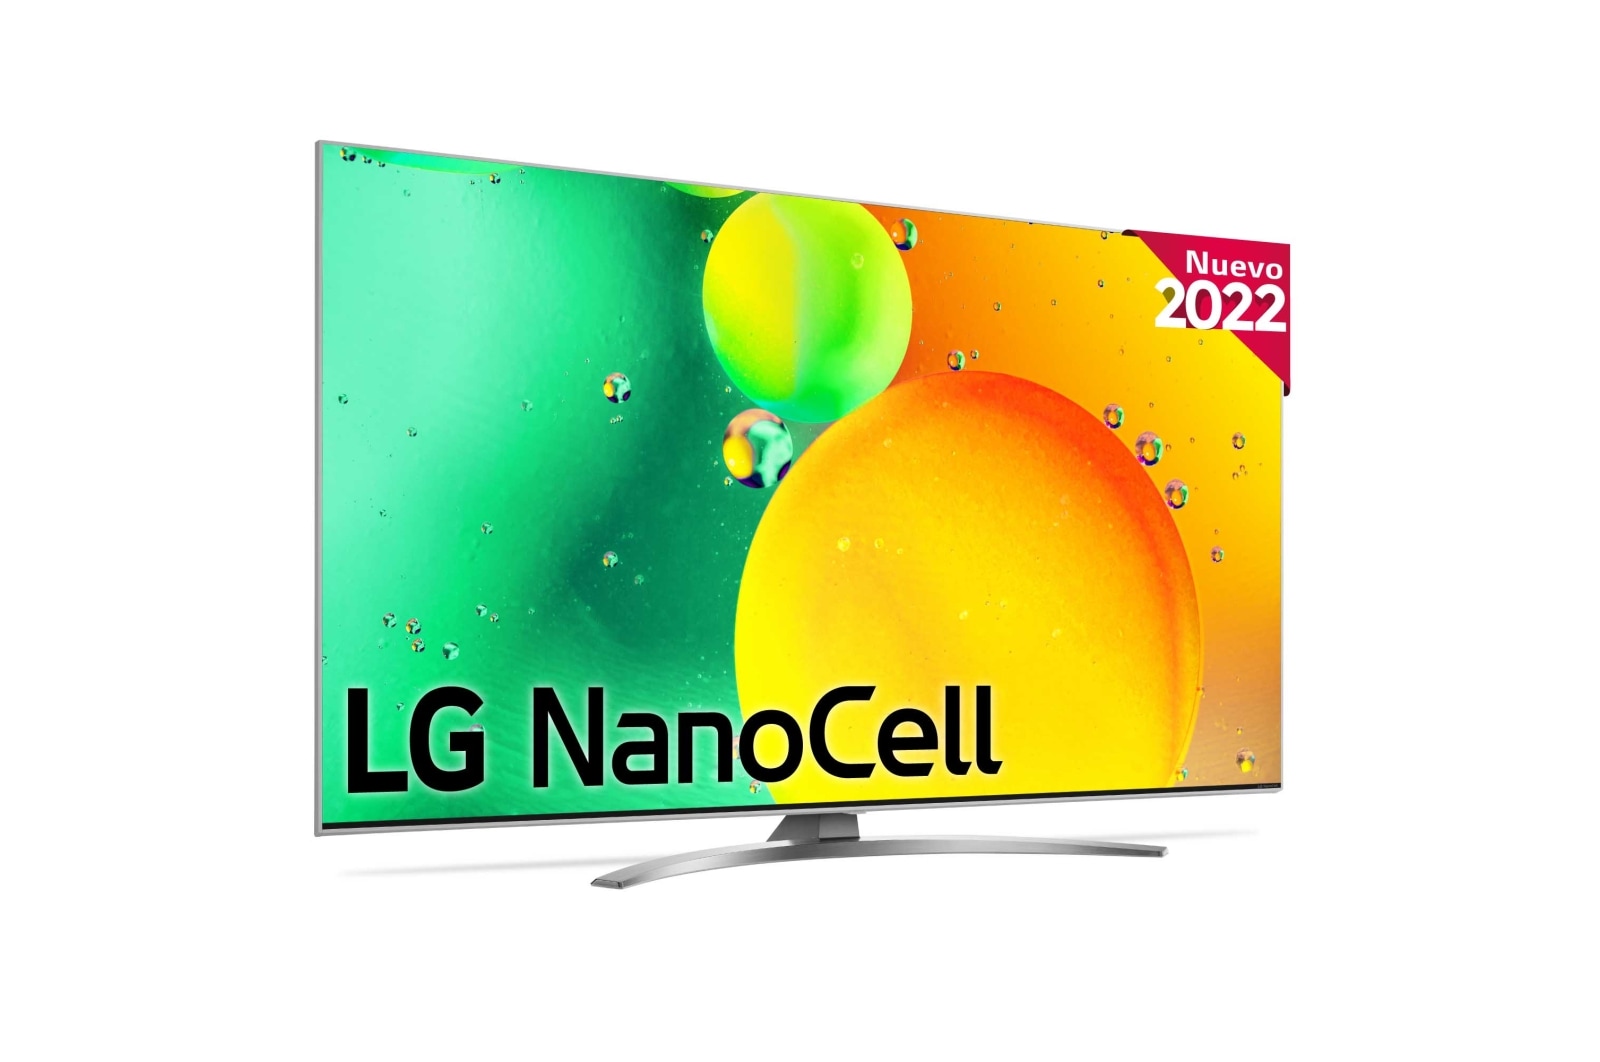 LG Televisor LG 4K Nanocell, Procesador de Gran Potencia 4K a5 Gen 5, compatible con formatos HDR 10, HLG y HGiG, Smart TV webOS22, 65NANO786QA